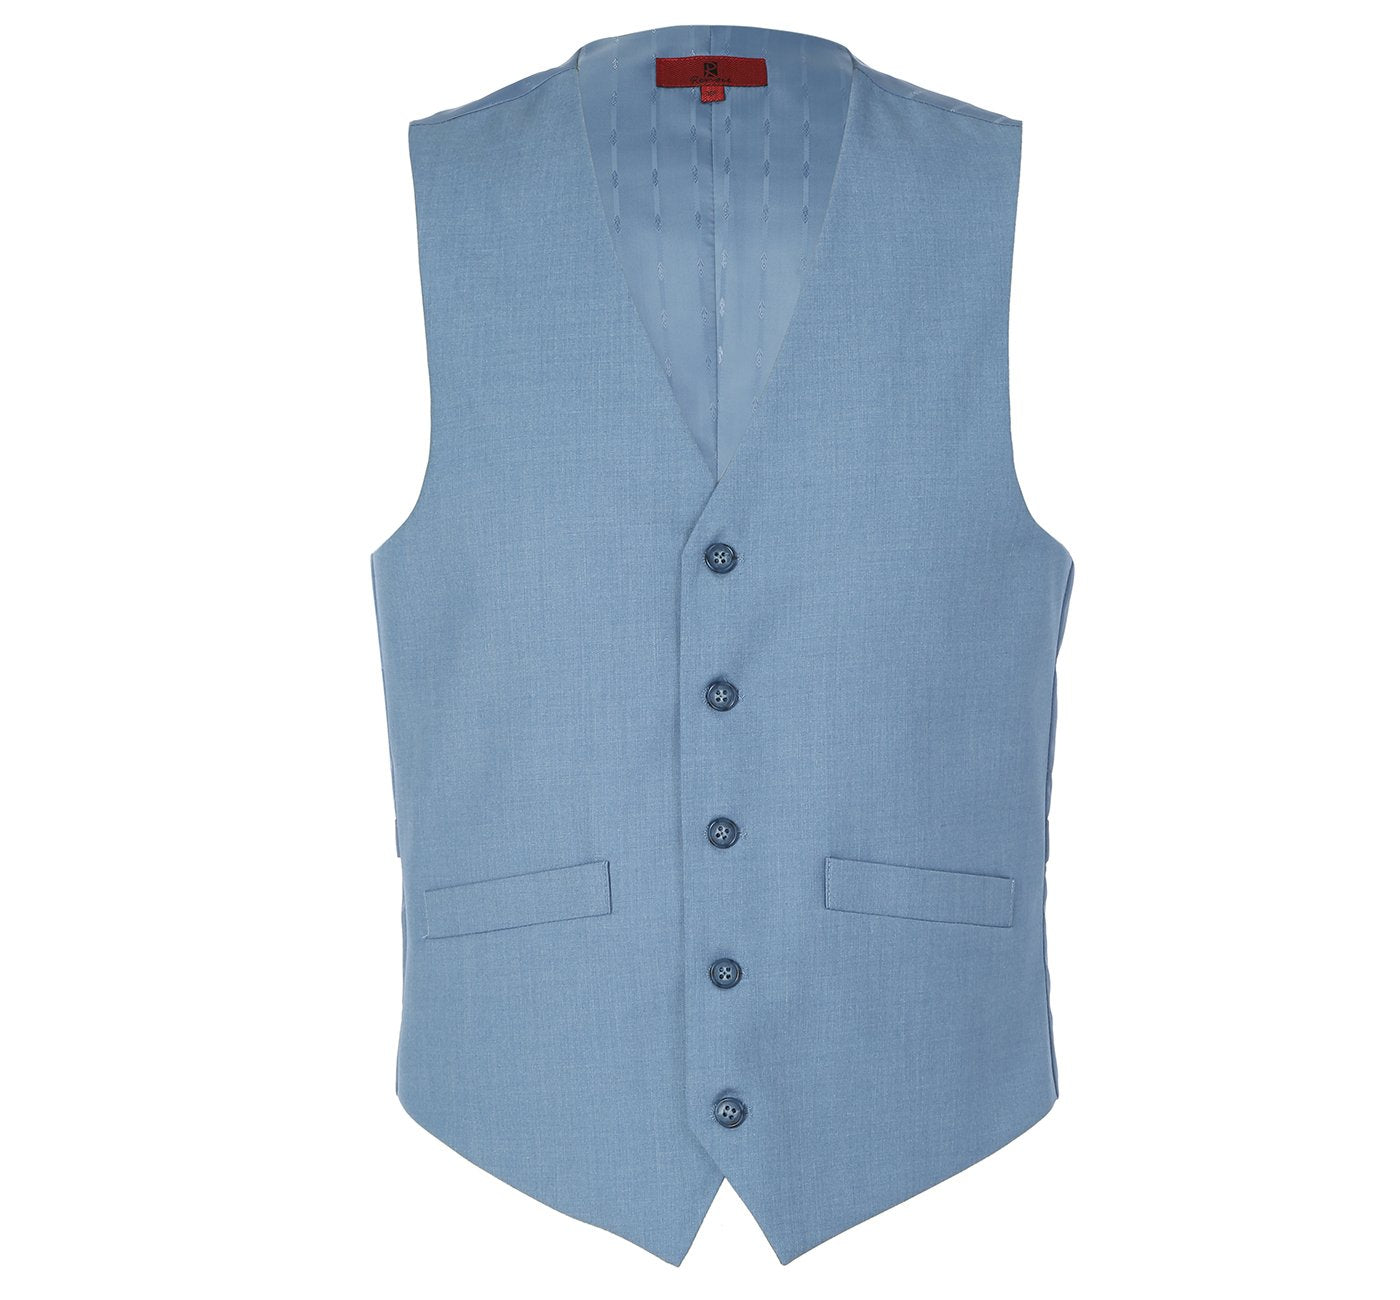 201-11 Men's Light Blue Classic Fit Suit Separate Vest